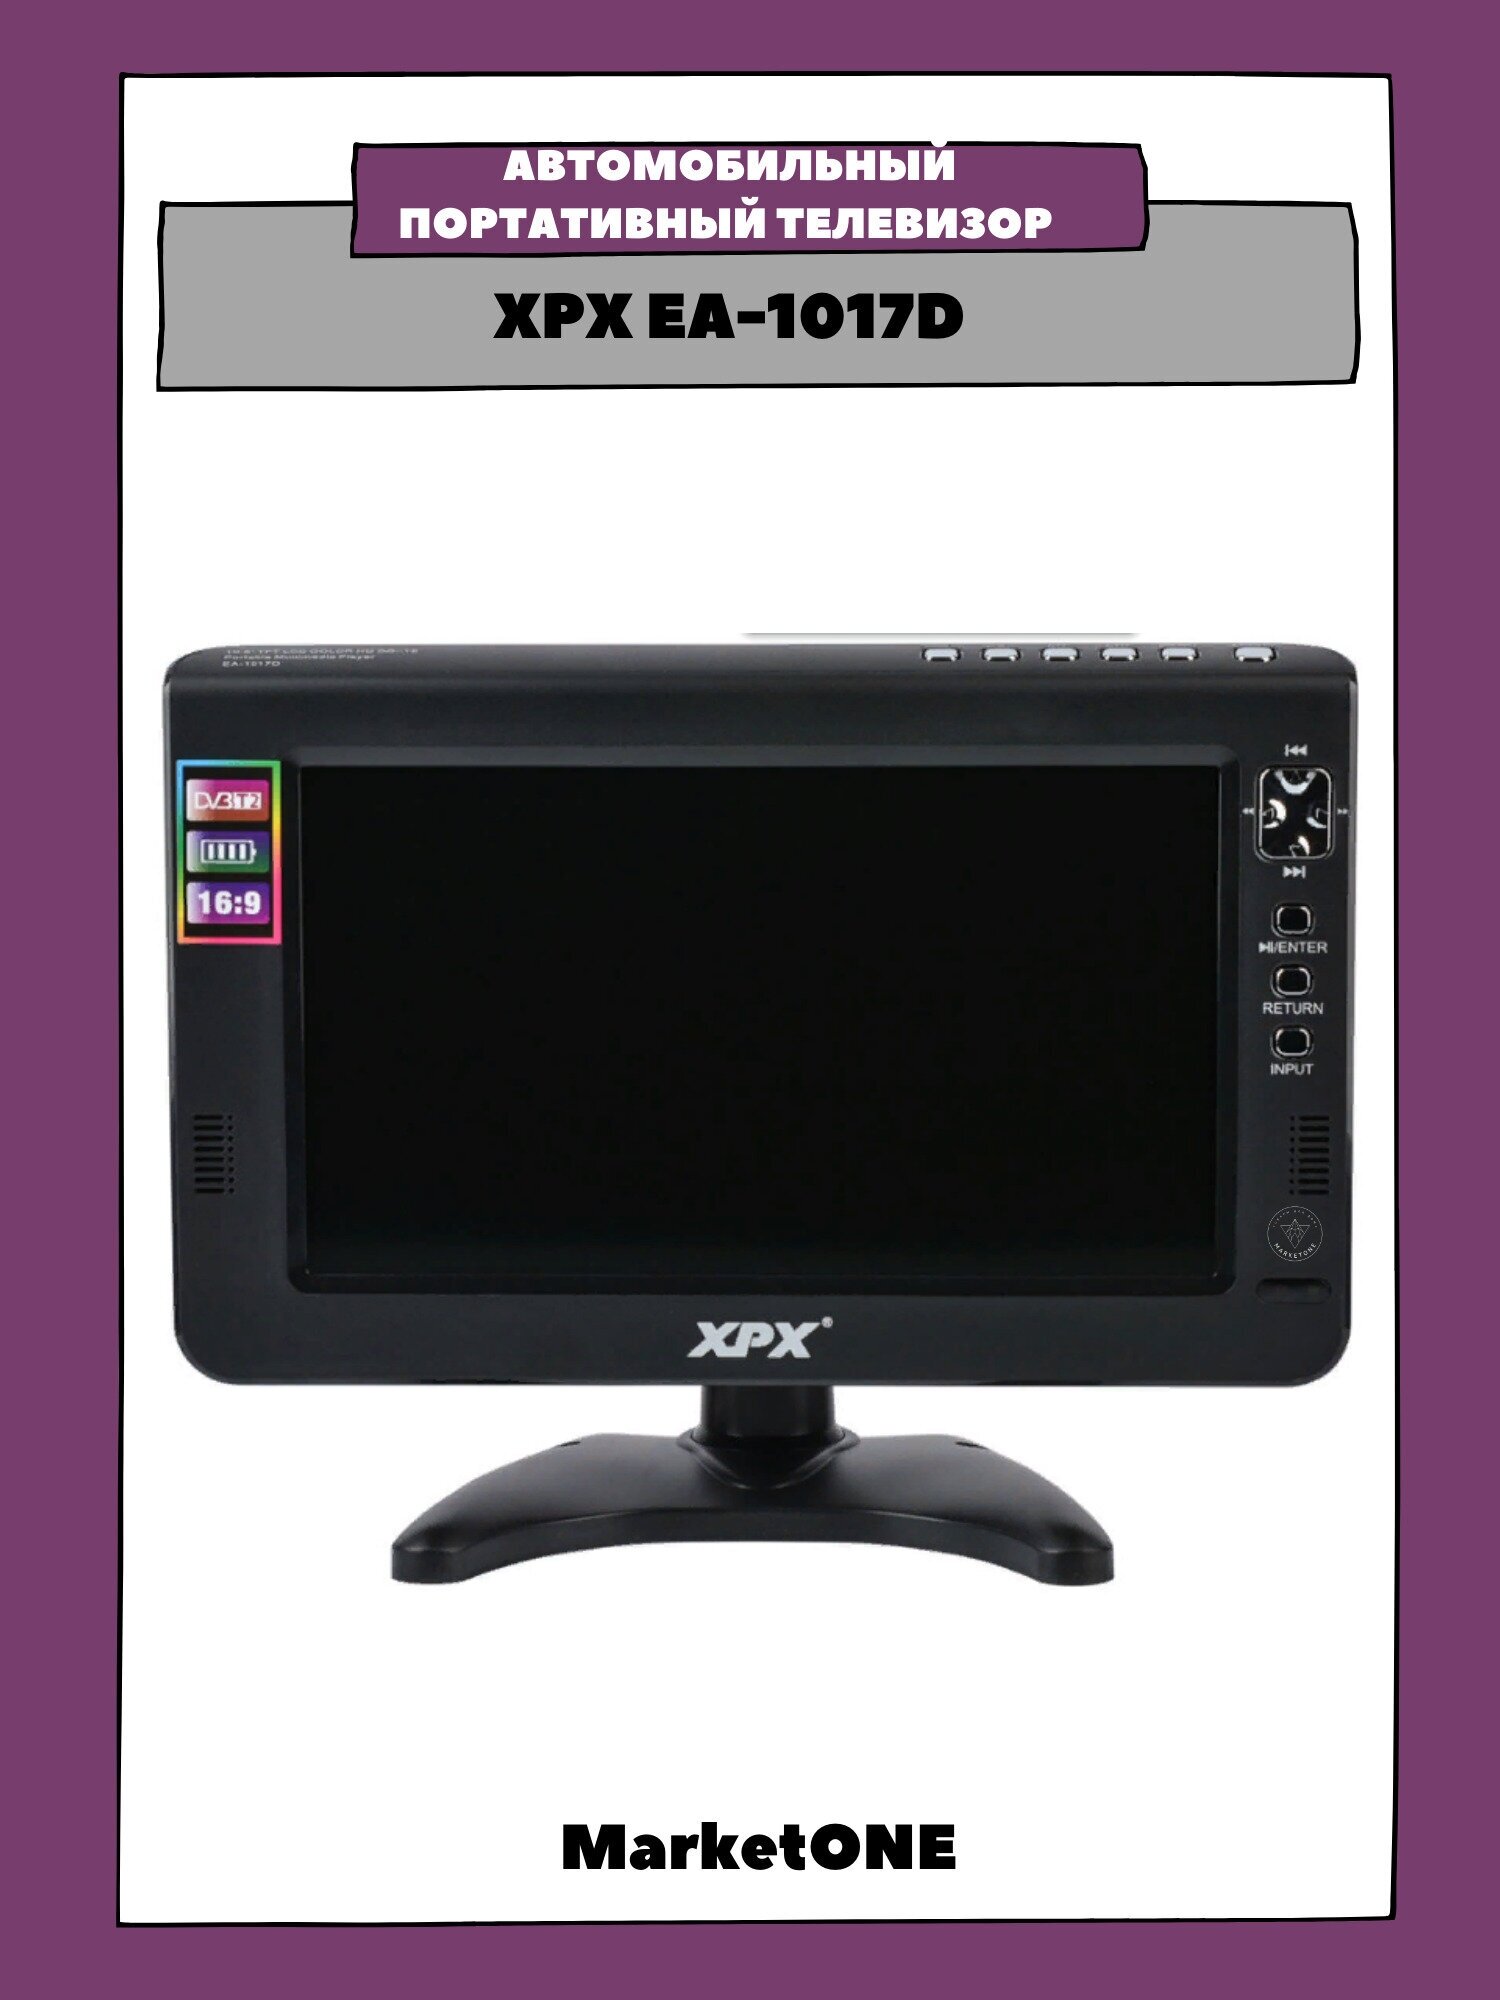 Автомобильный портативный телевизор С цифровым (DVB-T2) тюнером XPX EA-1017D